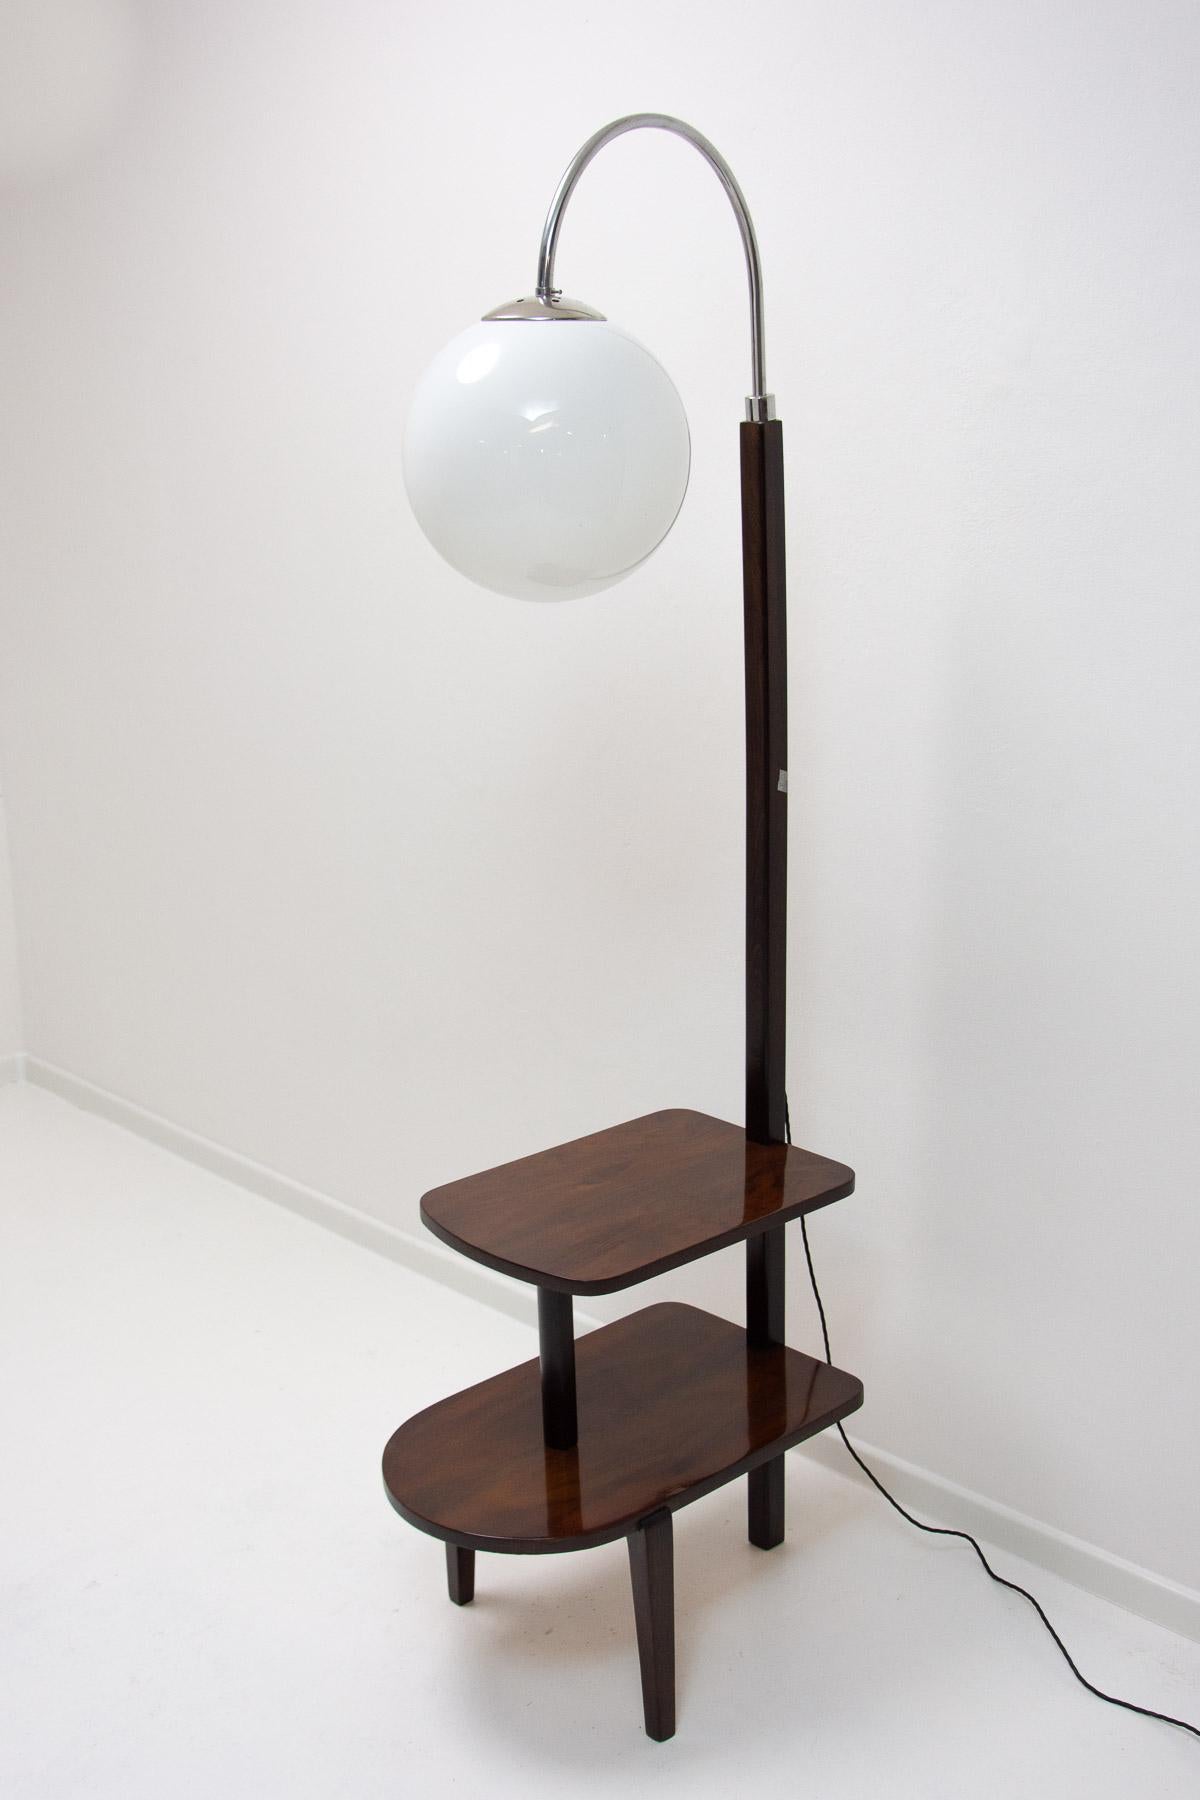 Thonet Stehleuchte, Katalog Nr. D-623, ART DECO Möbel, hergestellt in Bohemia in den 1920/1930er Jahren.  Verchromte Stange mit einem Holzteil - Walnussholz.  Kann auch als Beistelltisch oder Nachttisch verwendet werden. Vollständig restauriert,